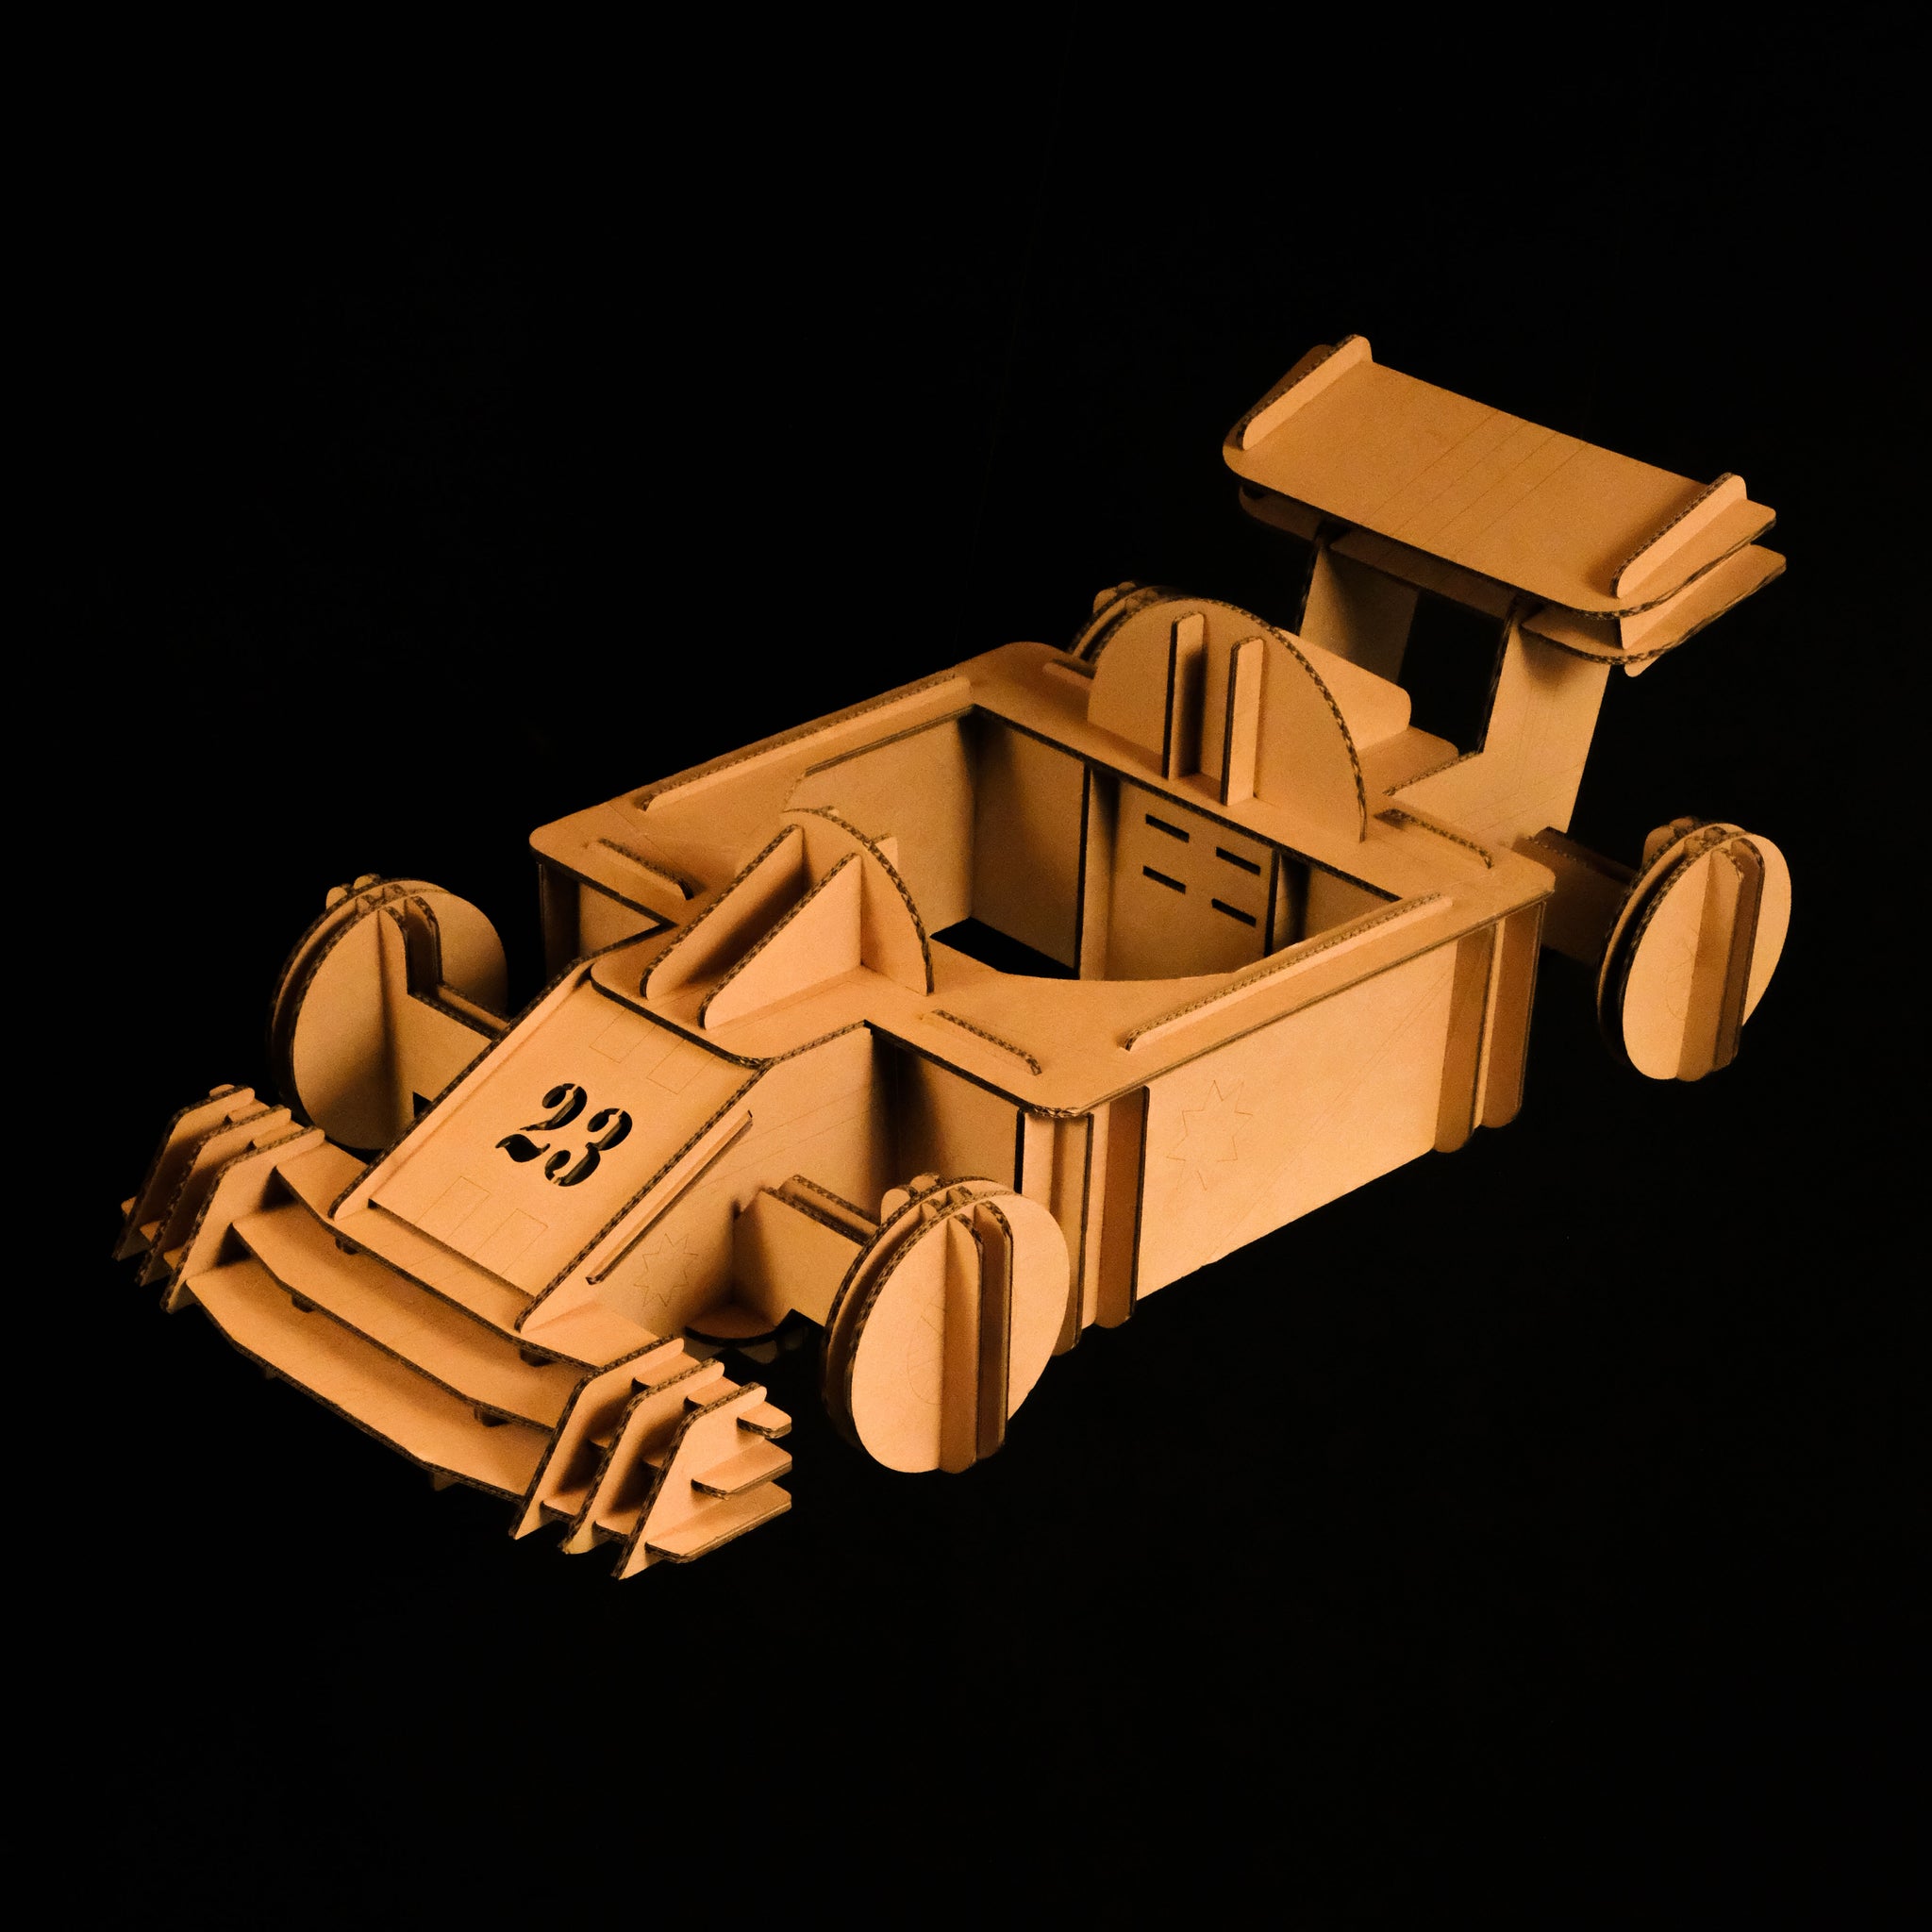 Un déguisement de Formule 1 en carton recyclé pour enfant à construire, peindre et colorier soi même sur fond noir Tonton Carton